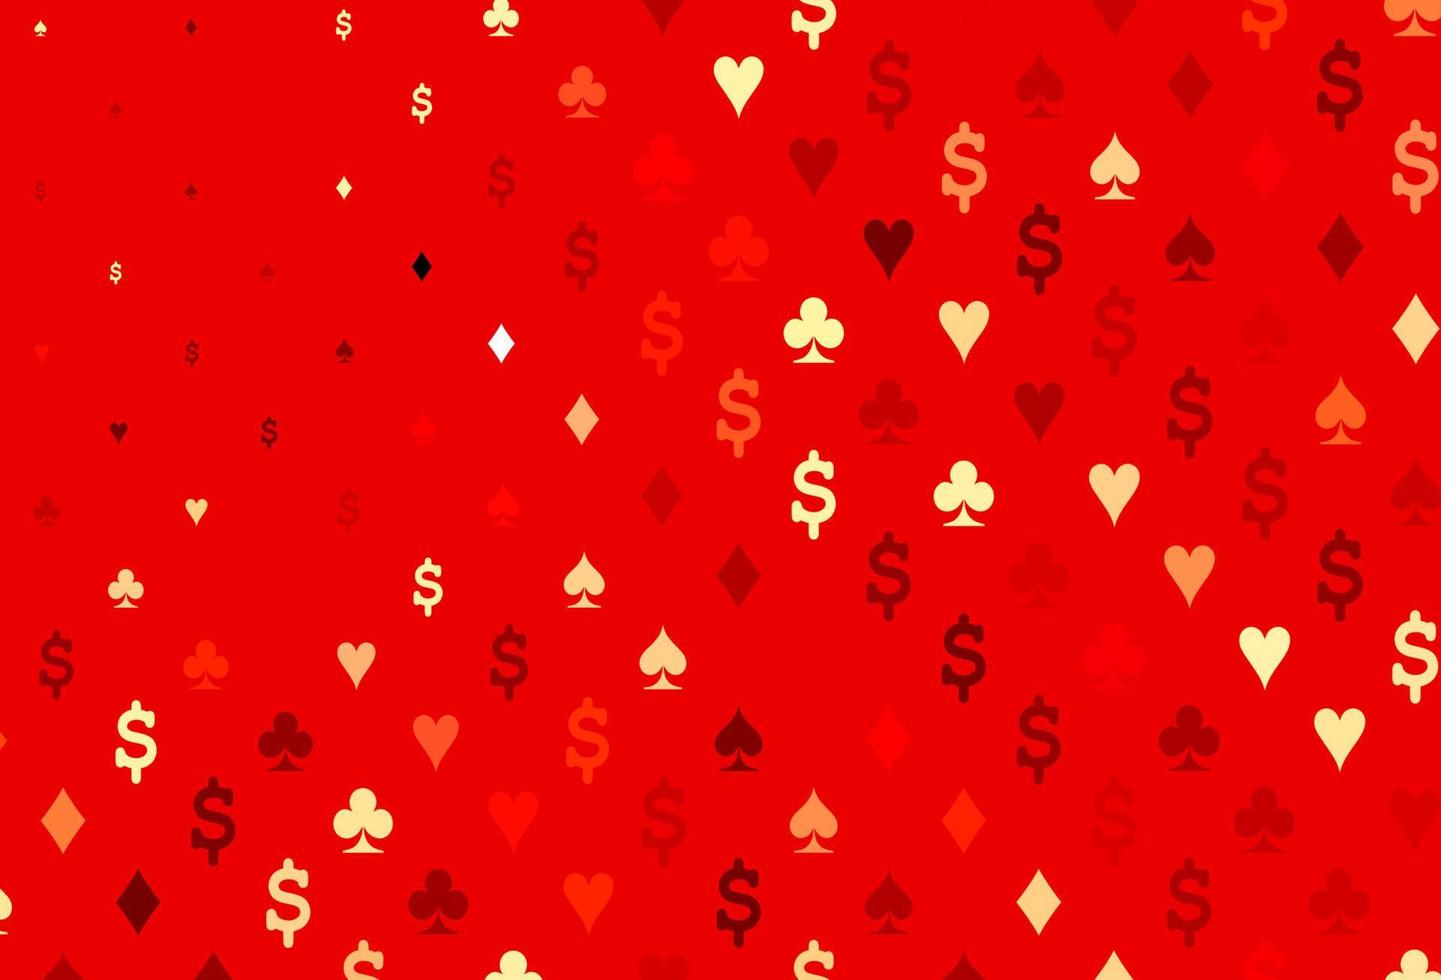 modelo de vetor vermelho claro com símbolos de pôquer.